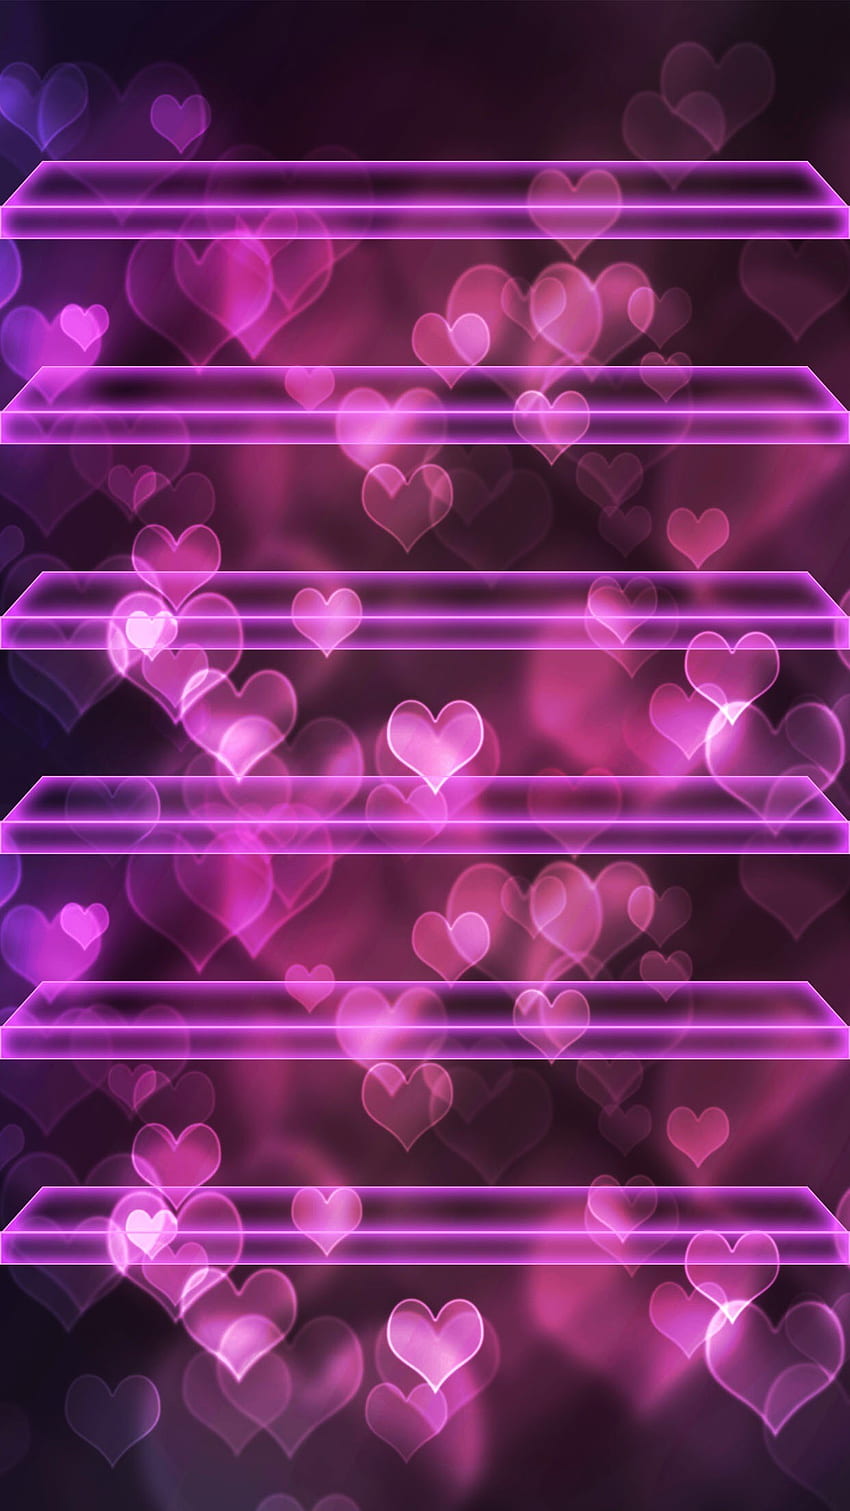 ââTAP AND GET THE APP! Shelves Hearts Bokeh Pink Neon Love Romantic HD phone wallpaper